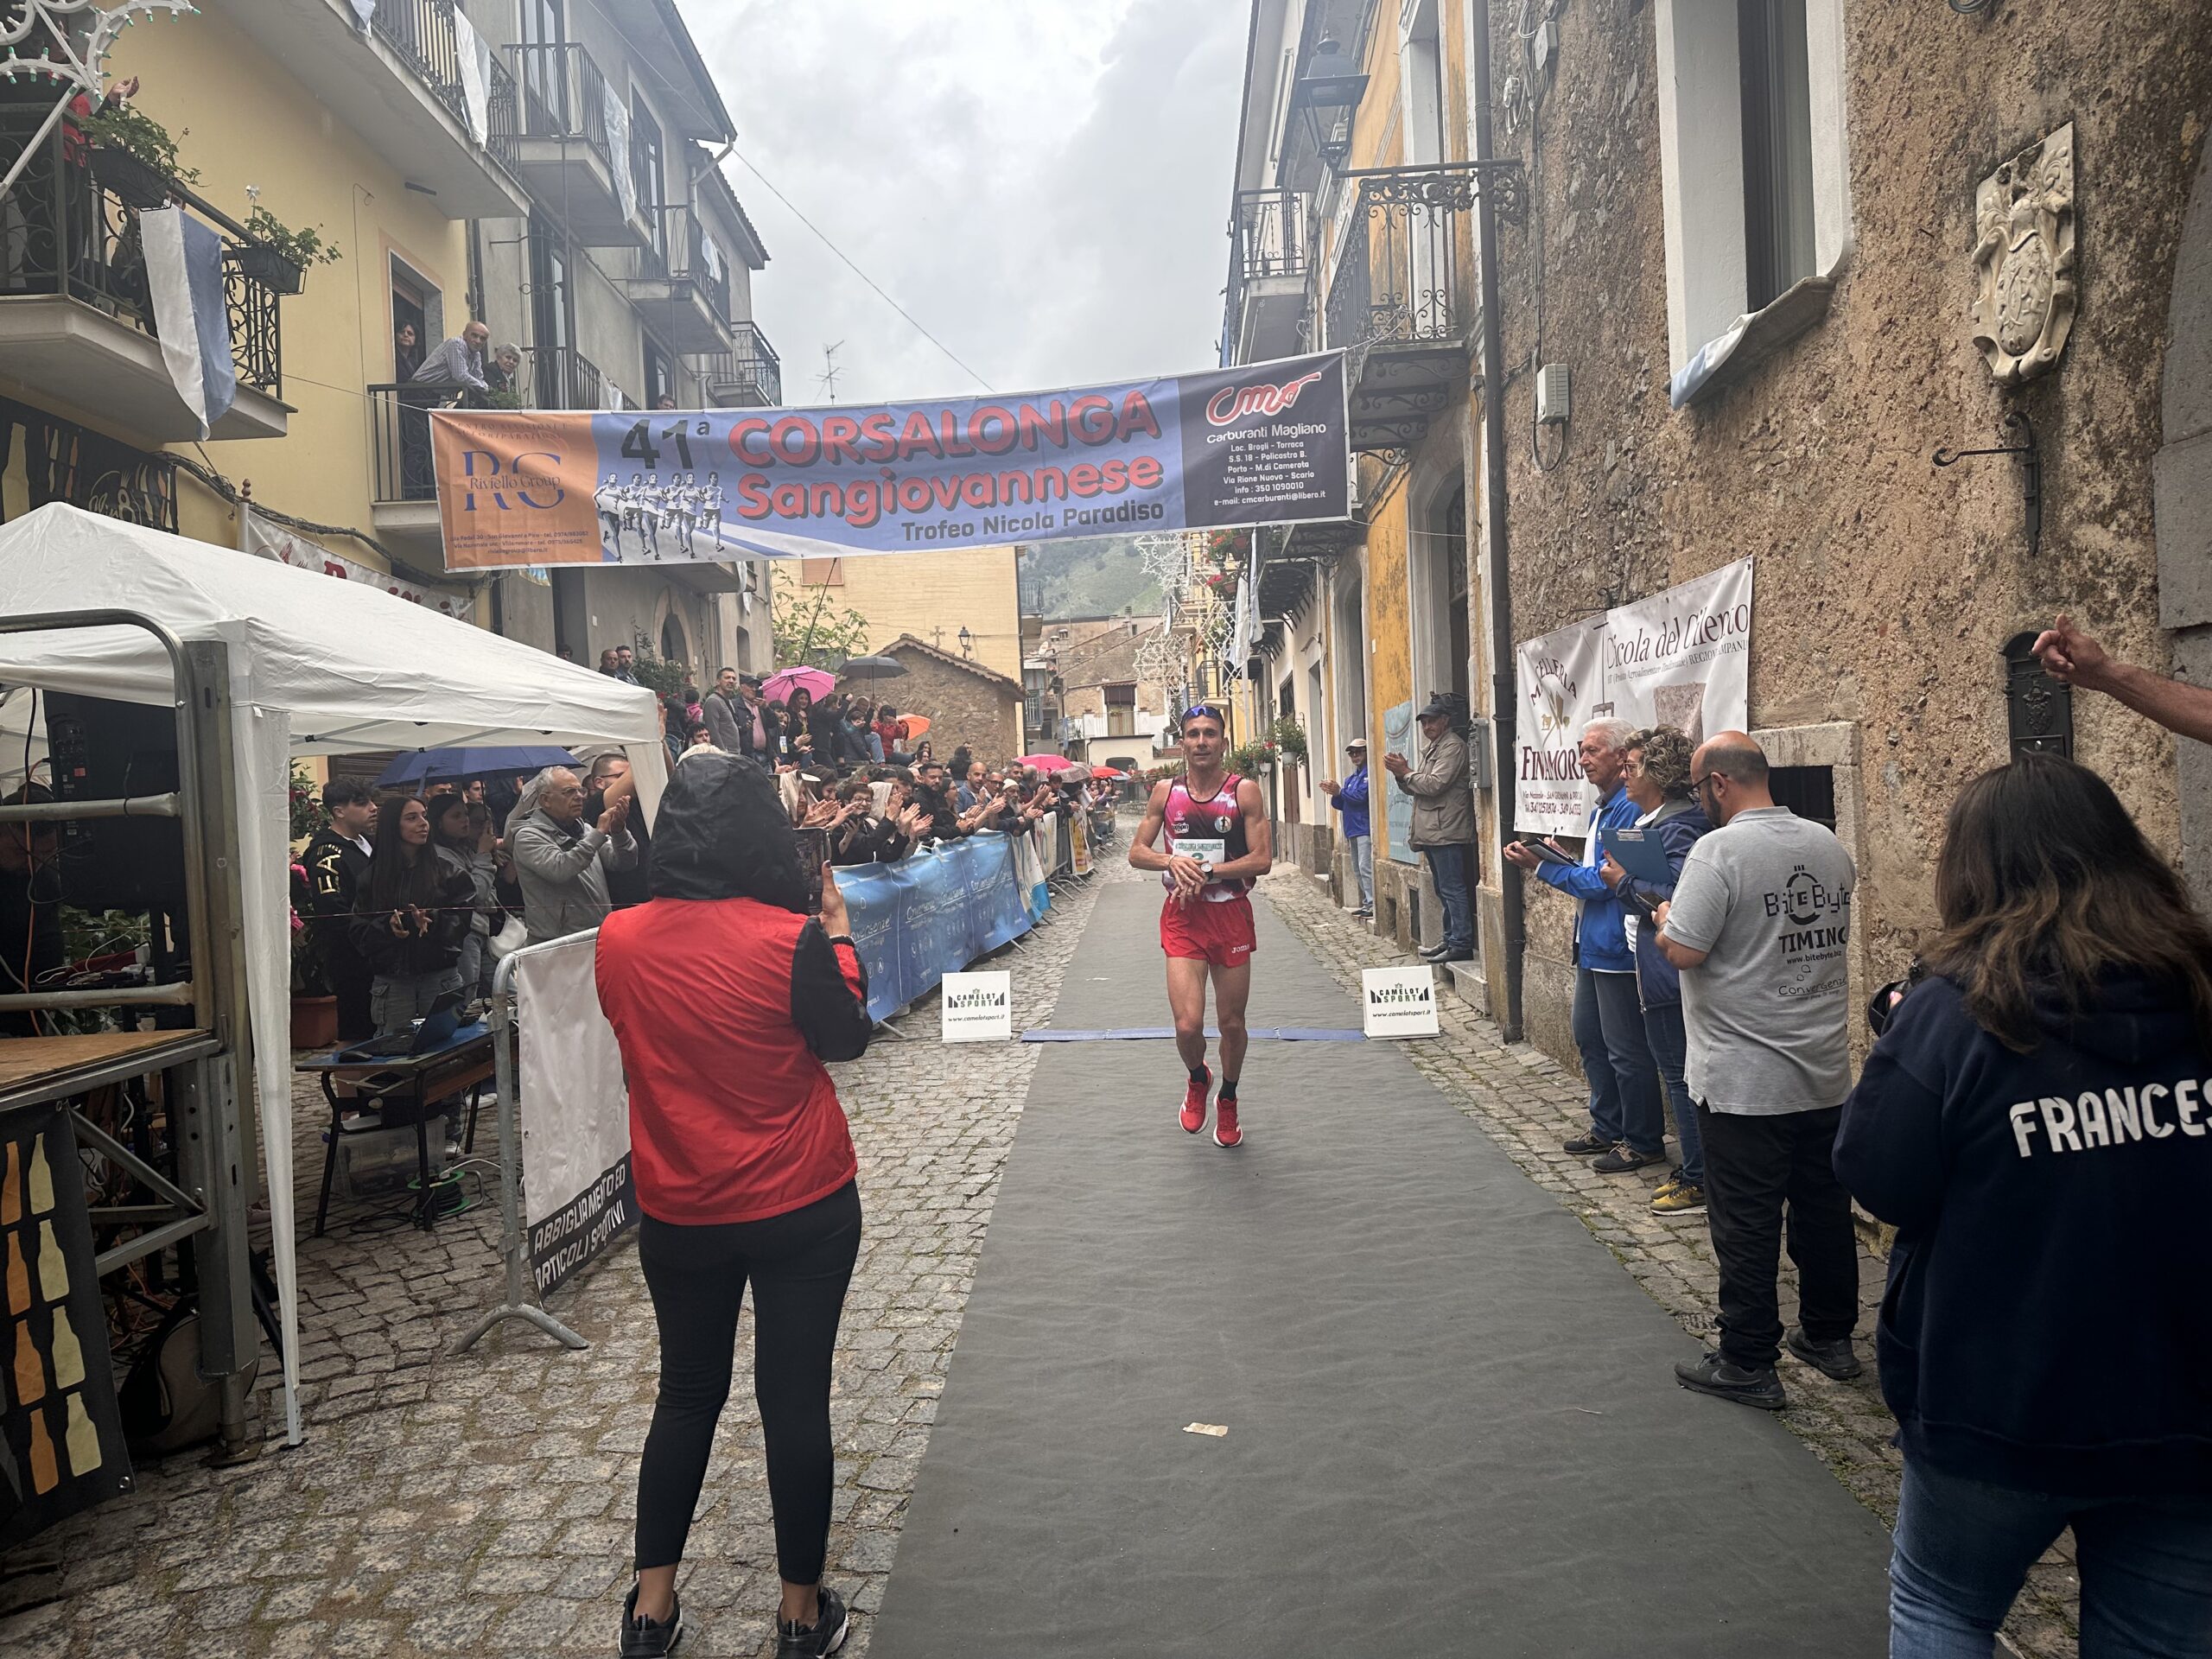 San Giovanni a Piro, Corsalonga: Iannone cala il tris. Nimbona straccia record femminile